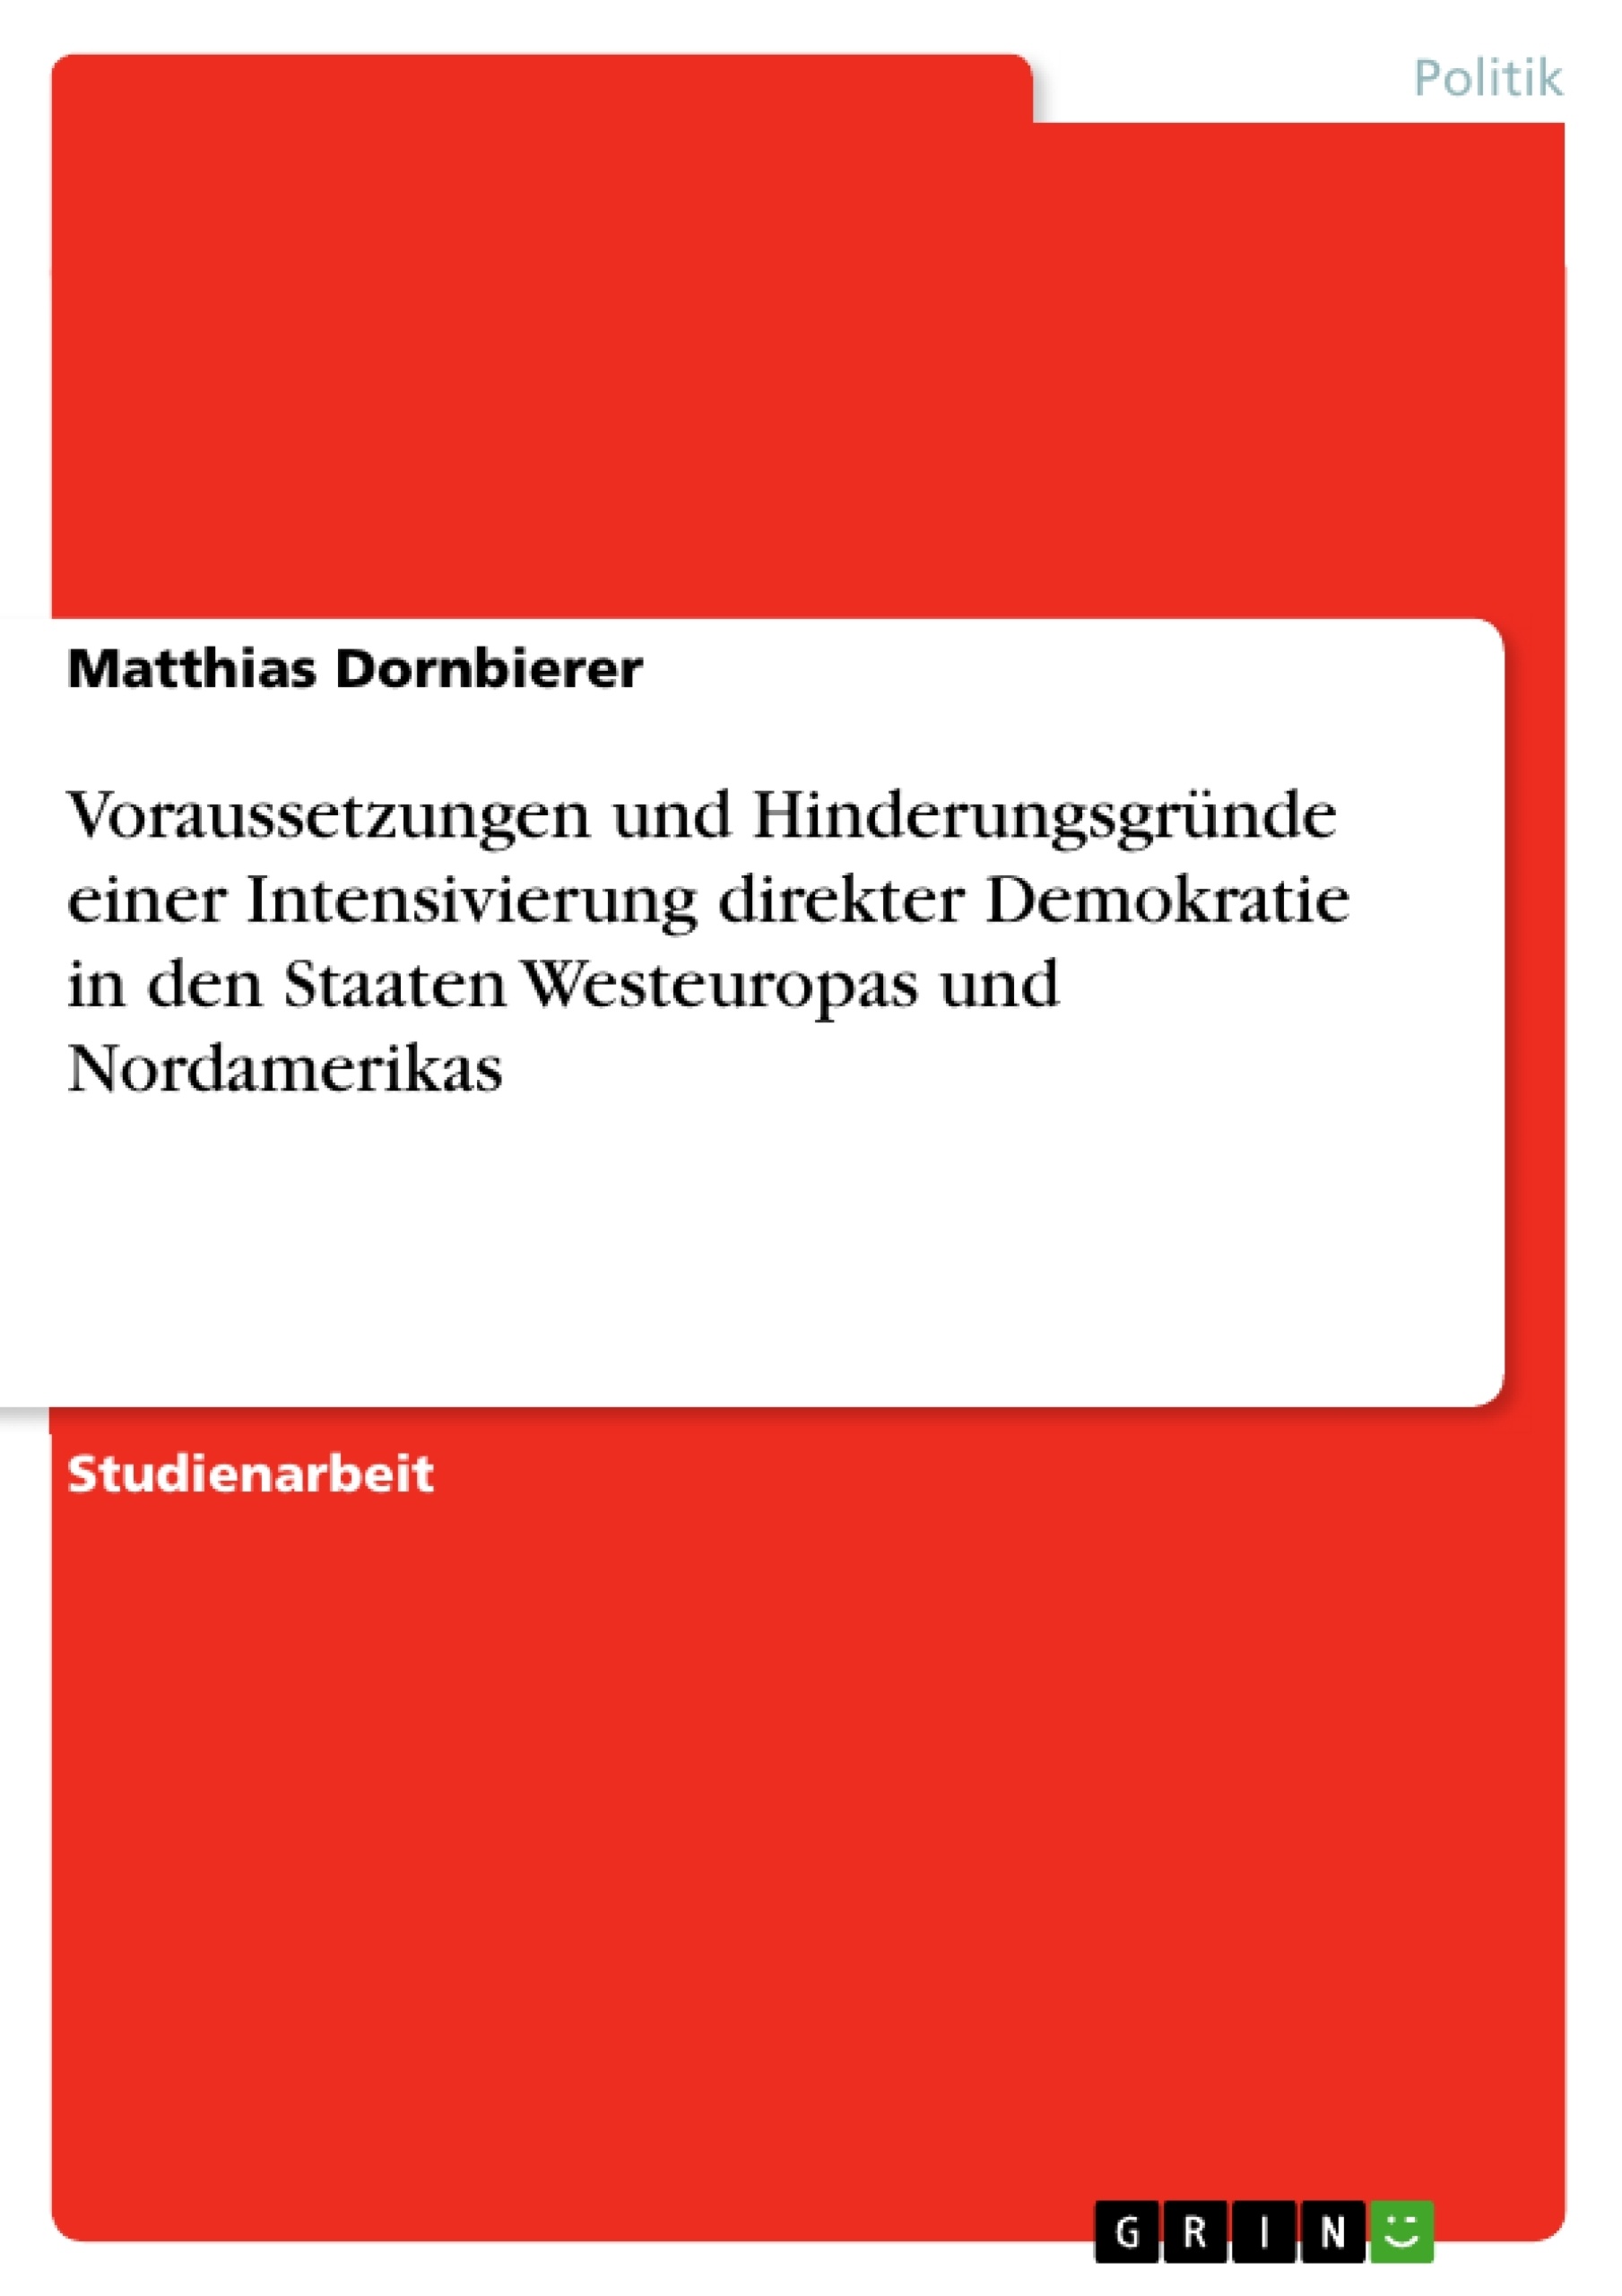 Titre: Voraussetzungen und Hinderungsgründe einer Intensivierung direkter Demokratie in den Staaten Westeuropas und Nordamerikas